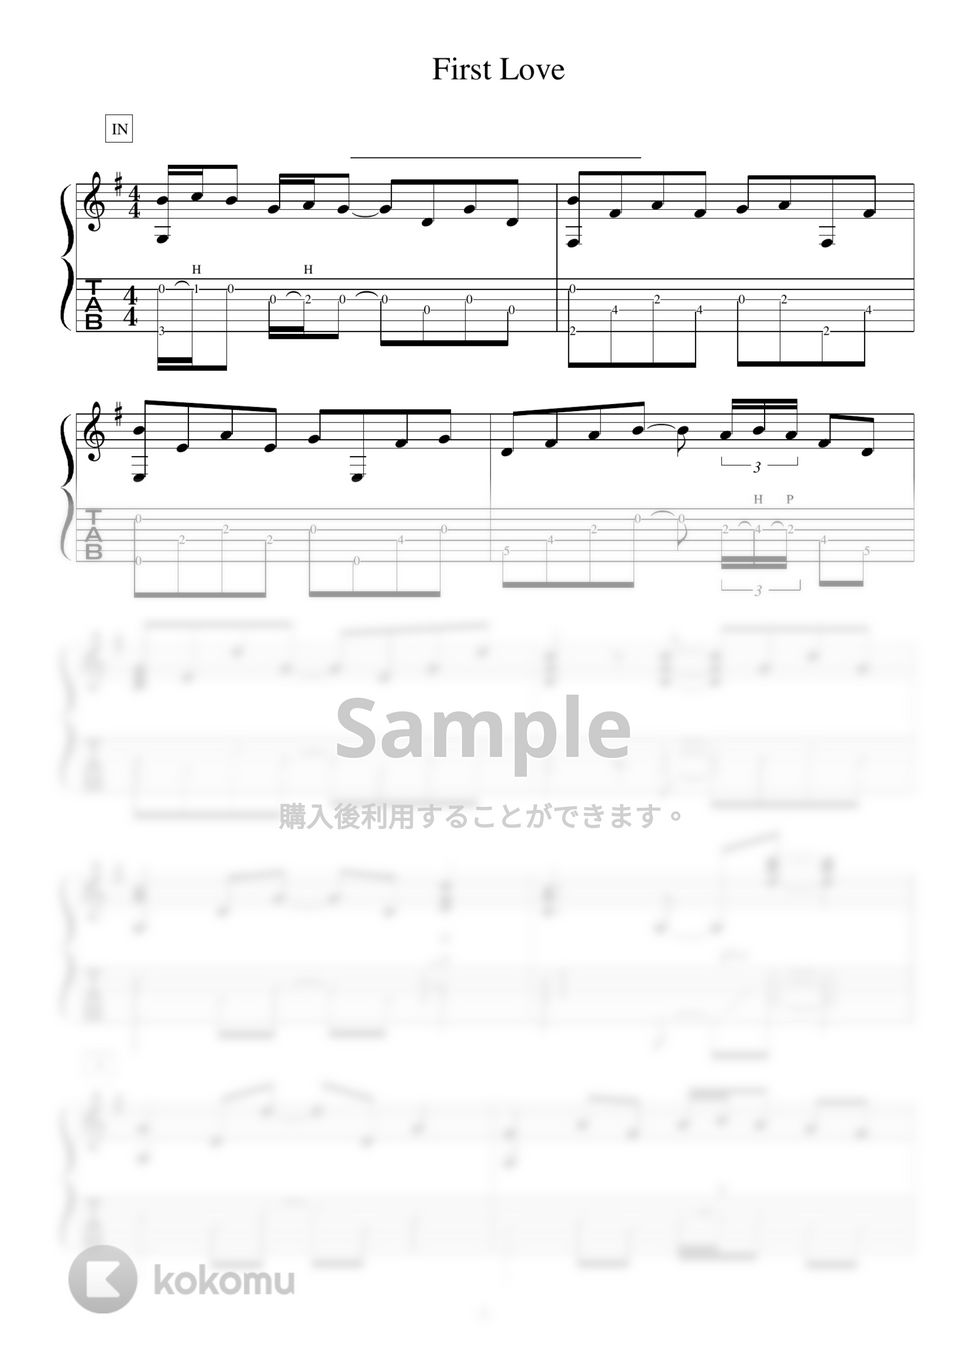 宇多田ヒカル - First Love アコギソロギター演奏動画付TAB譜 by バイトーン音楽教室